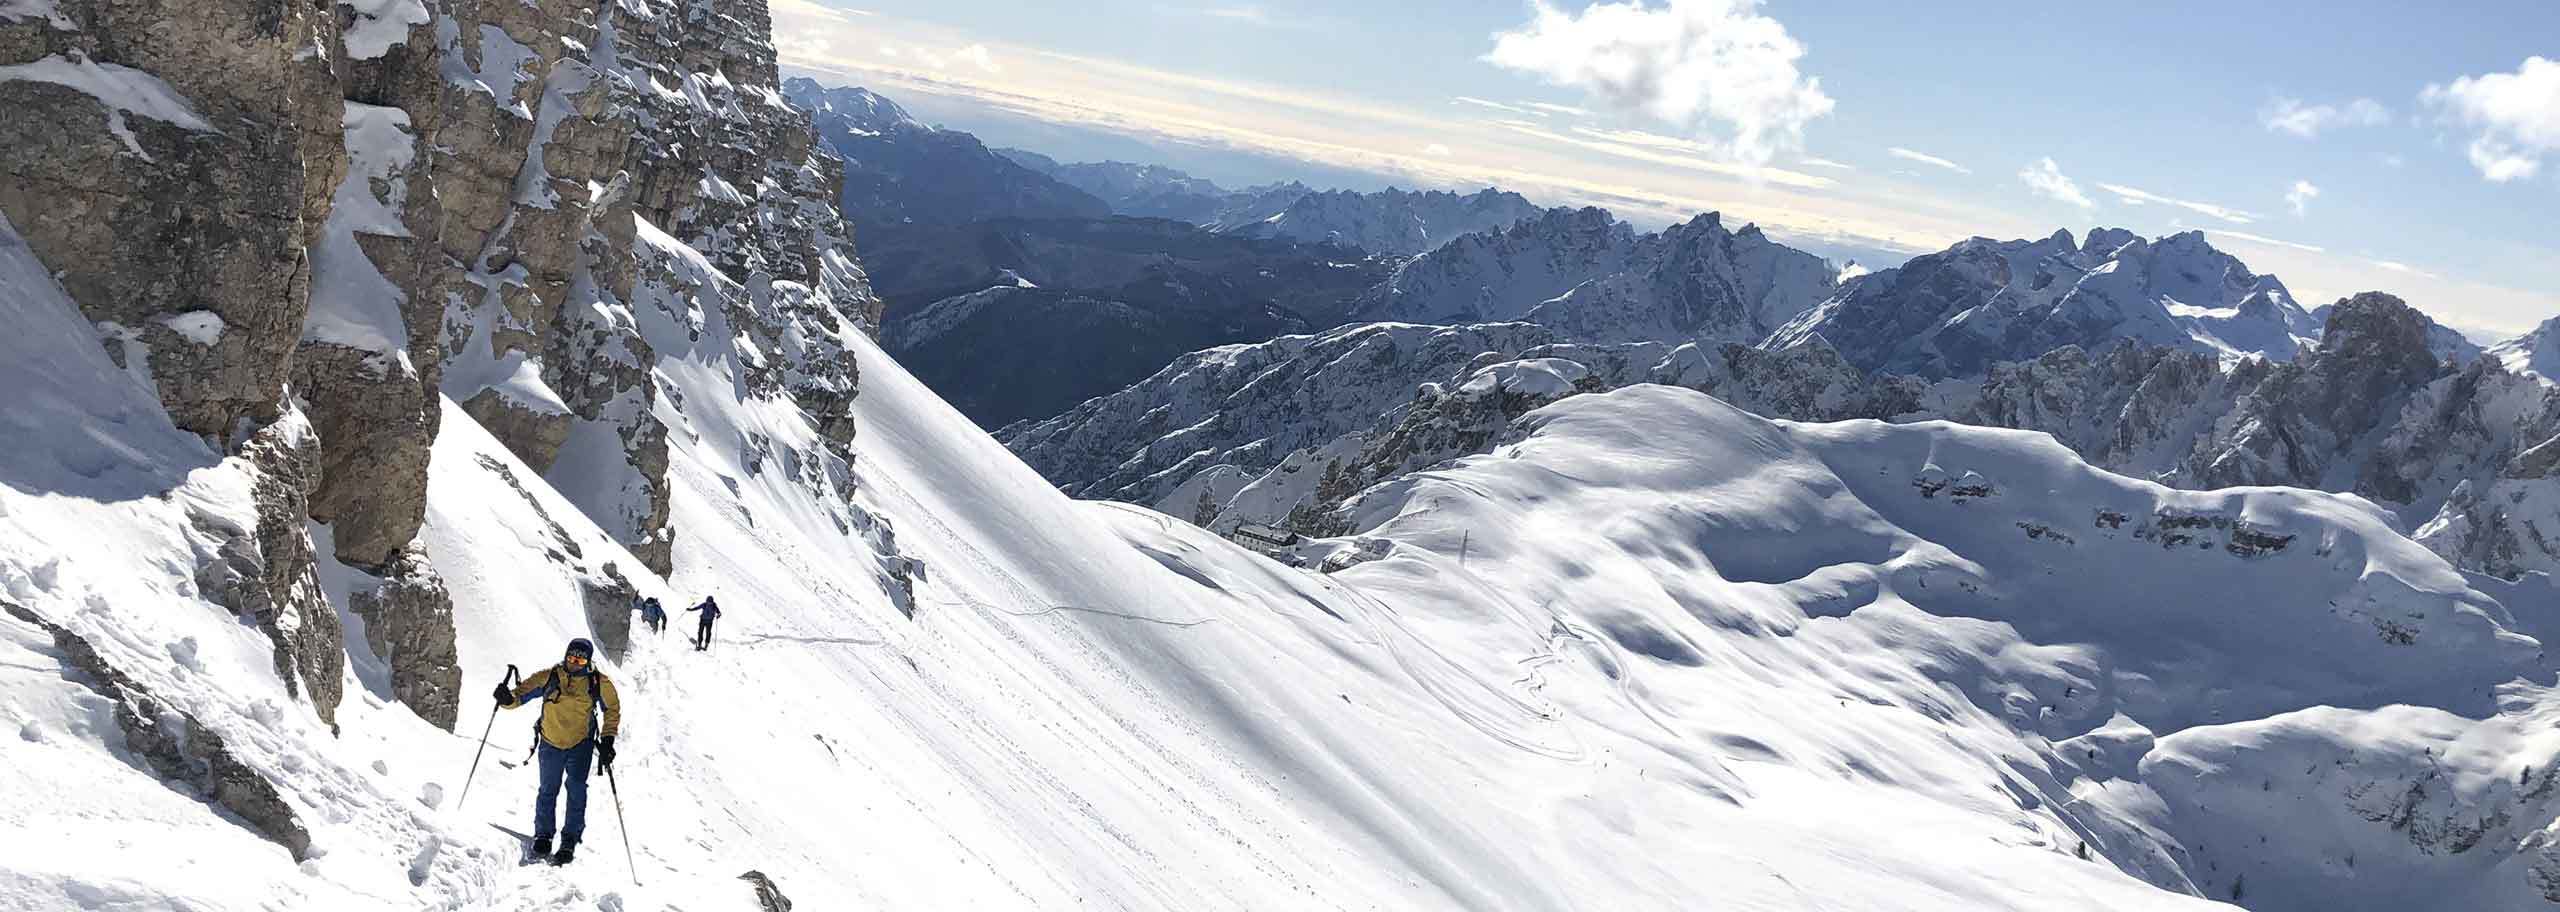 Sci Alpinismo ad Auronzo di Cadore, Escursioni e Corsi Sci Alpinistici